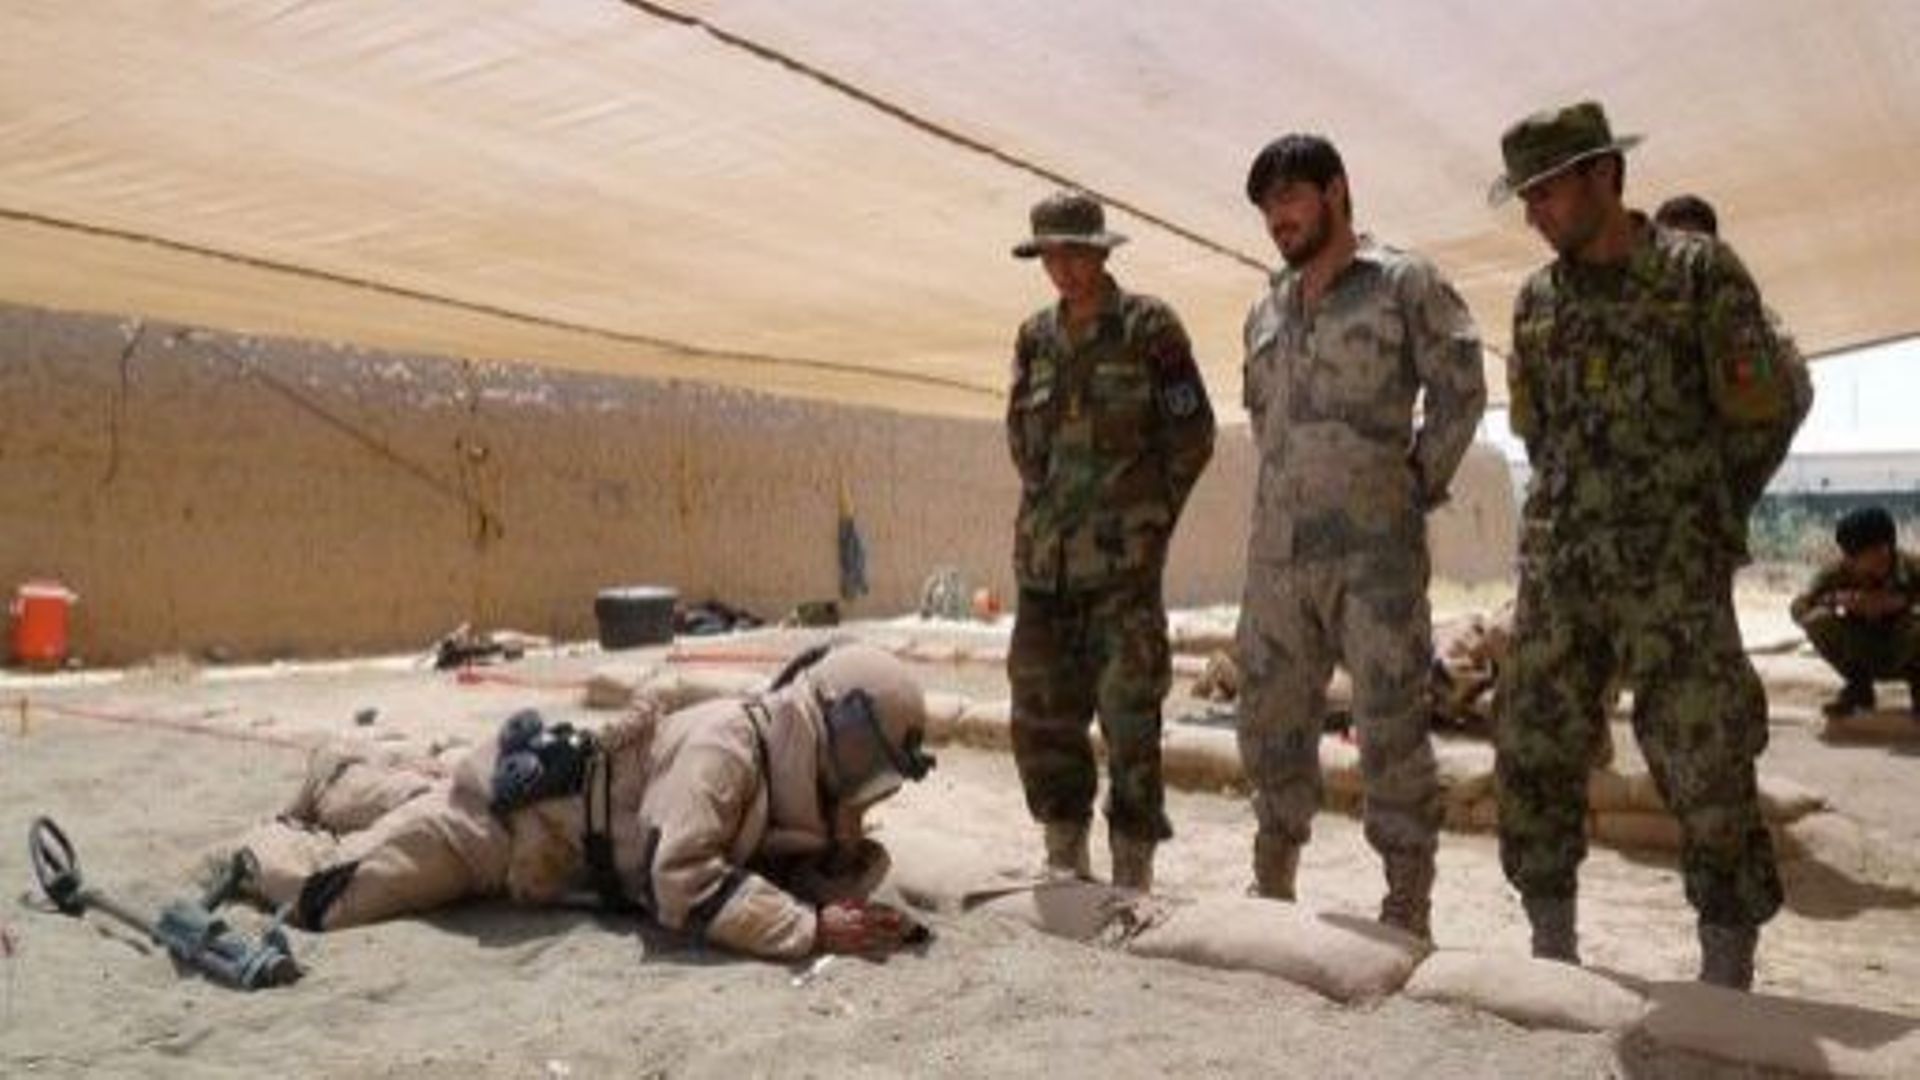 Des soldats afghans s'entraînent, le 12 juin 2013 dans le Camp Shaheen, situé près de Mazar-e-Sharif